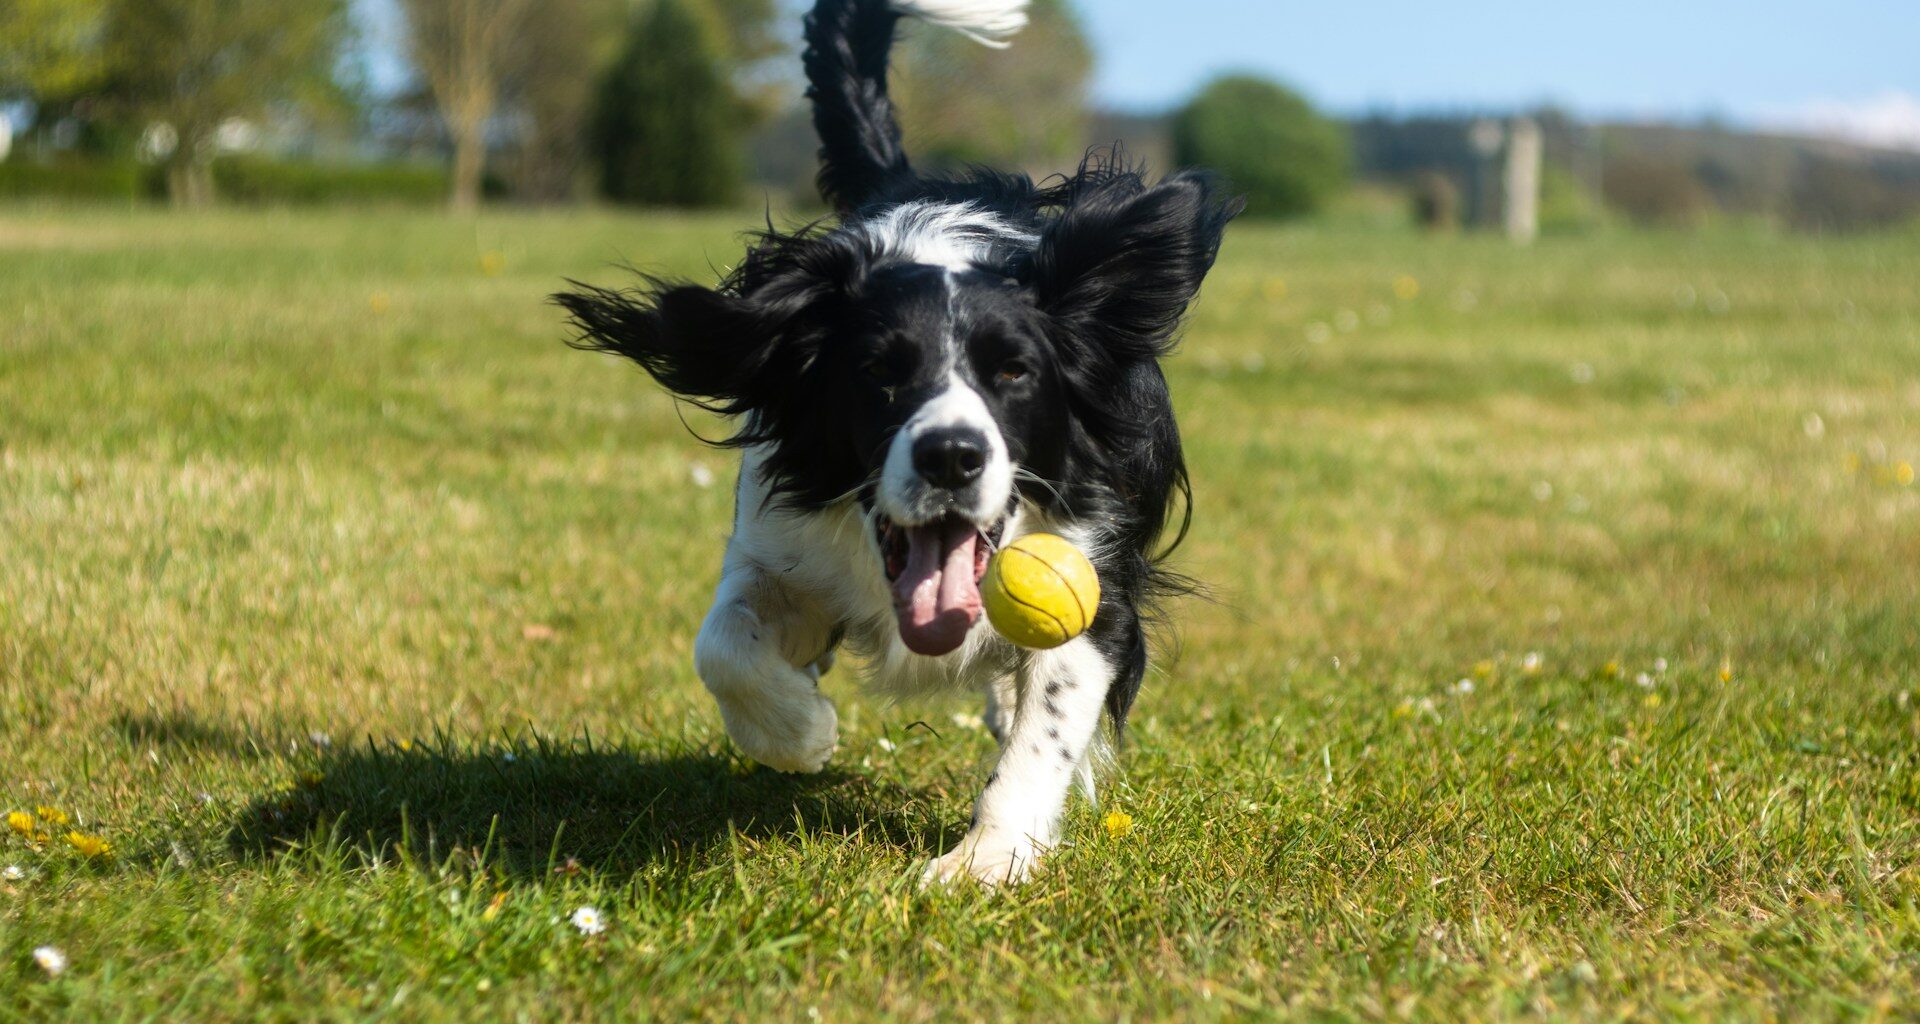 Treibball czyli psi sport z piłką: Zabawa, inteligencja i współpraca z psem